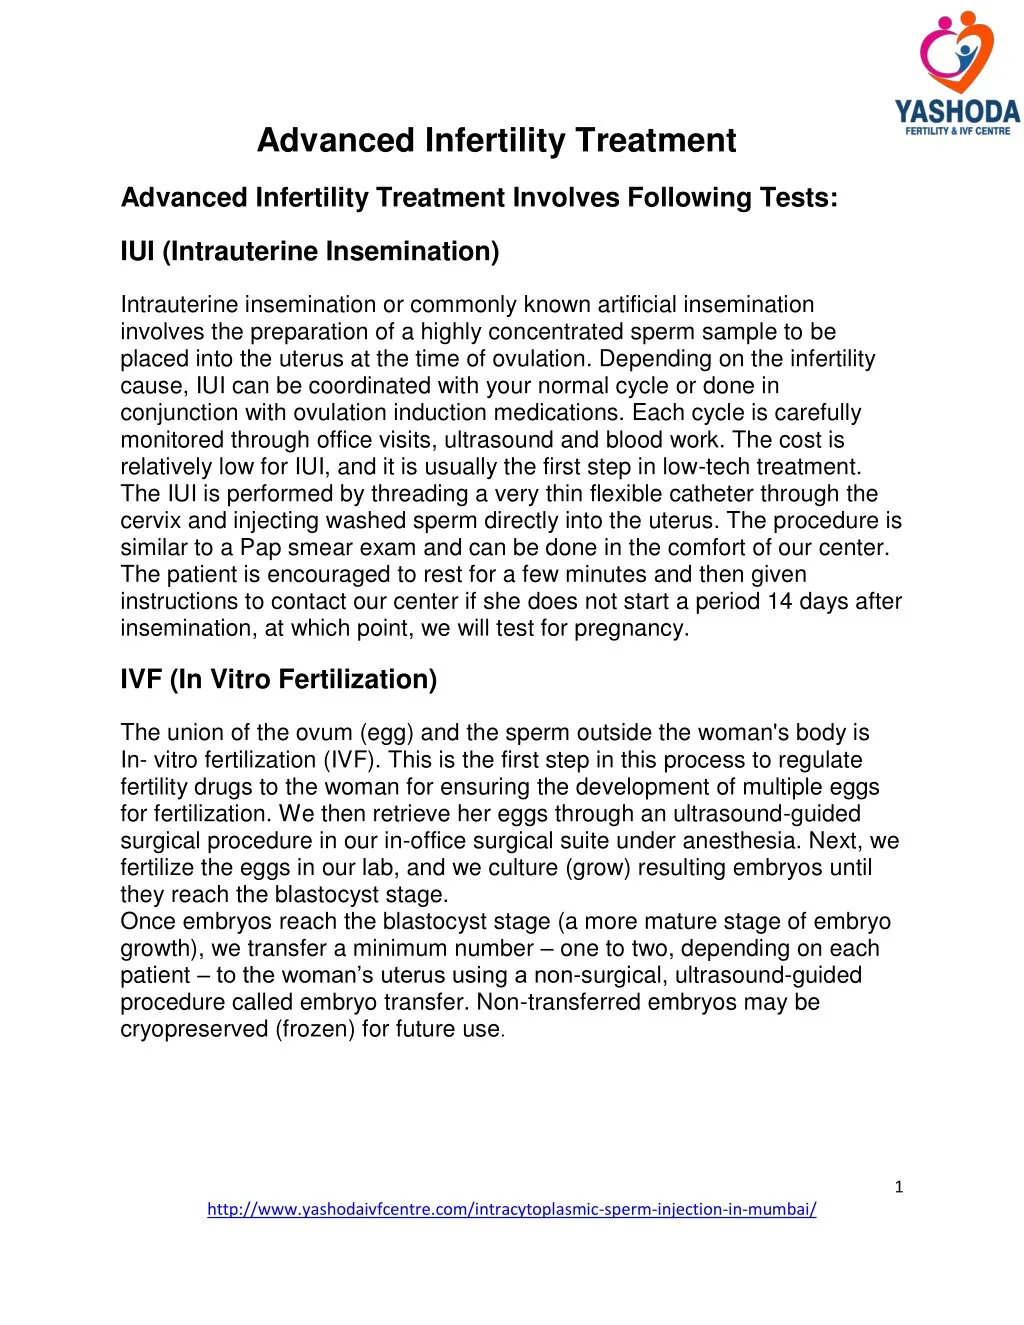 advanced infertility treatment